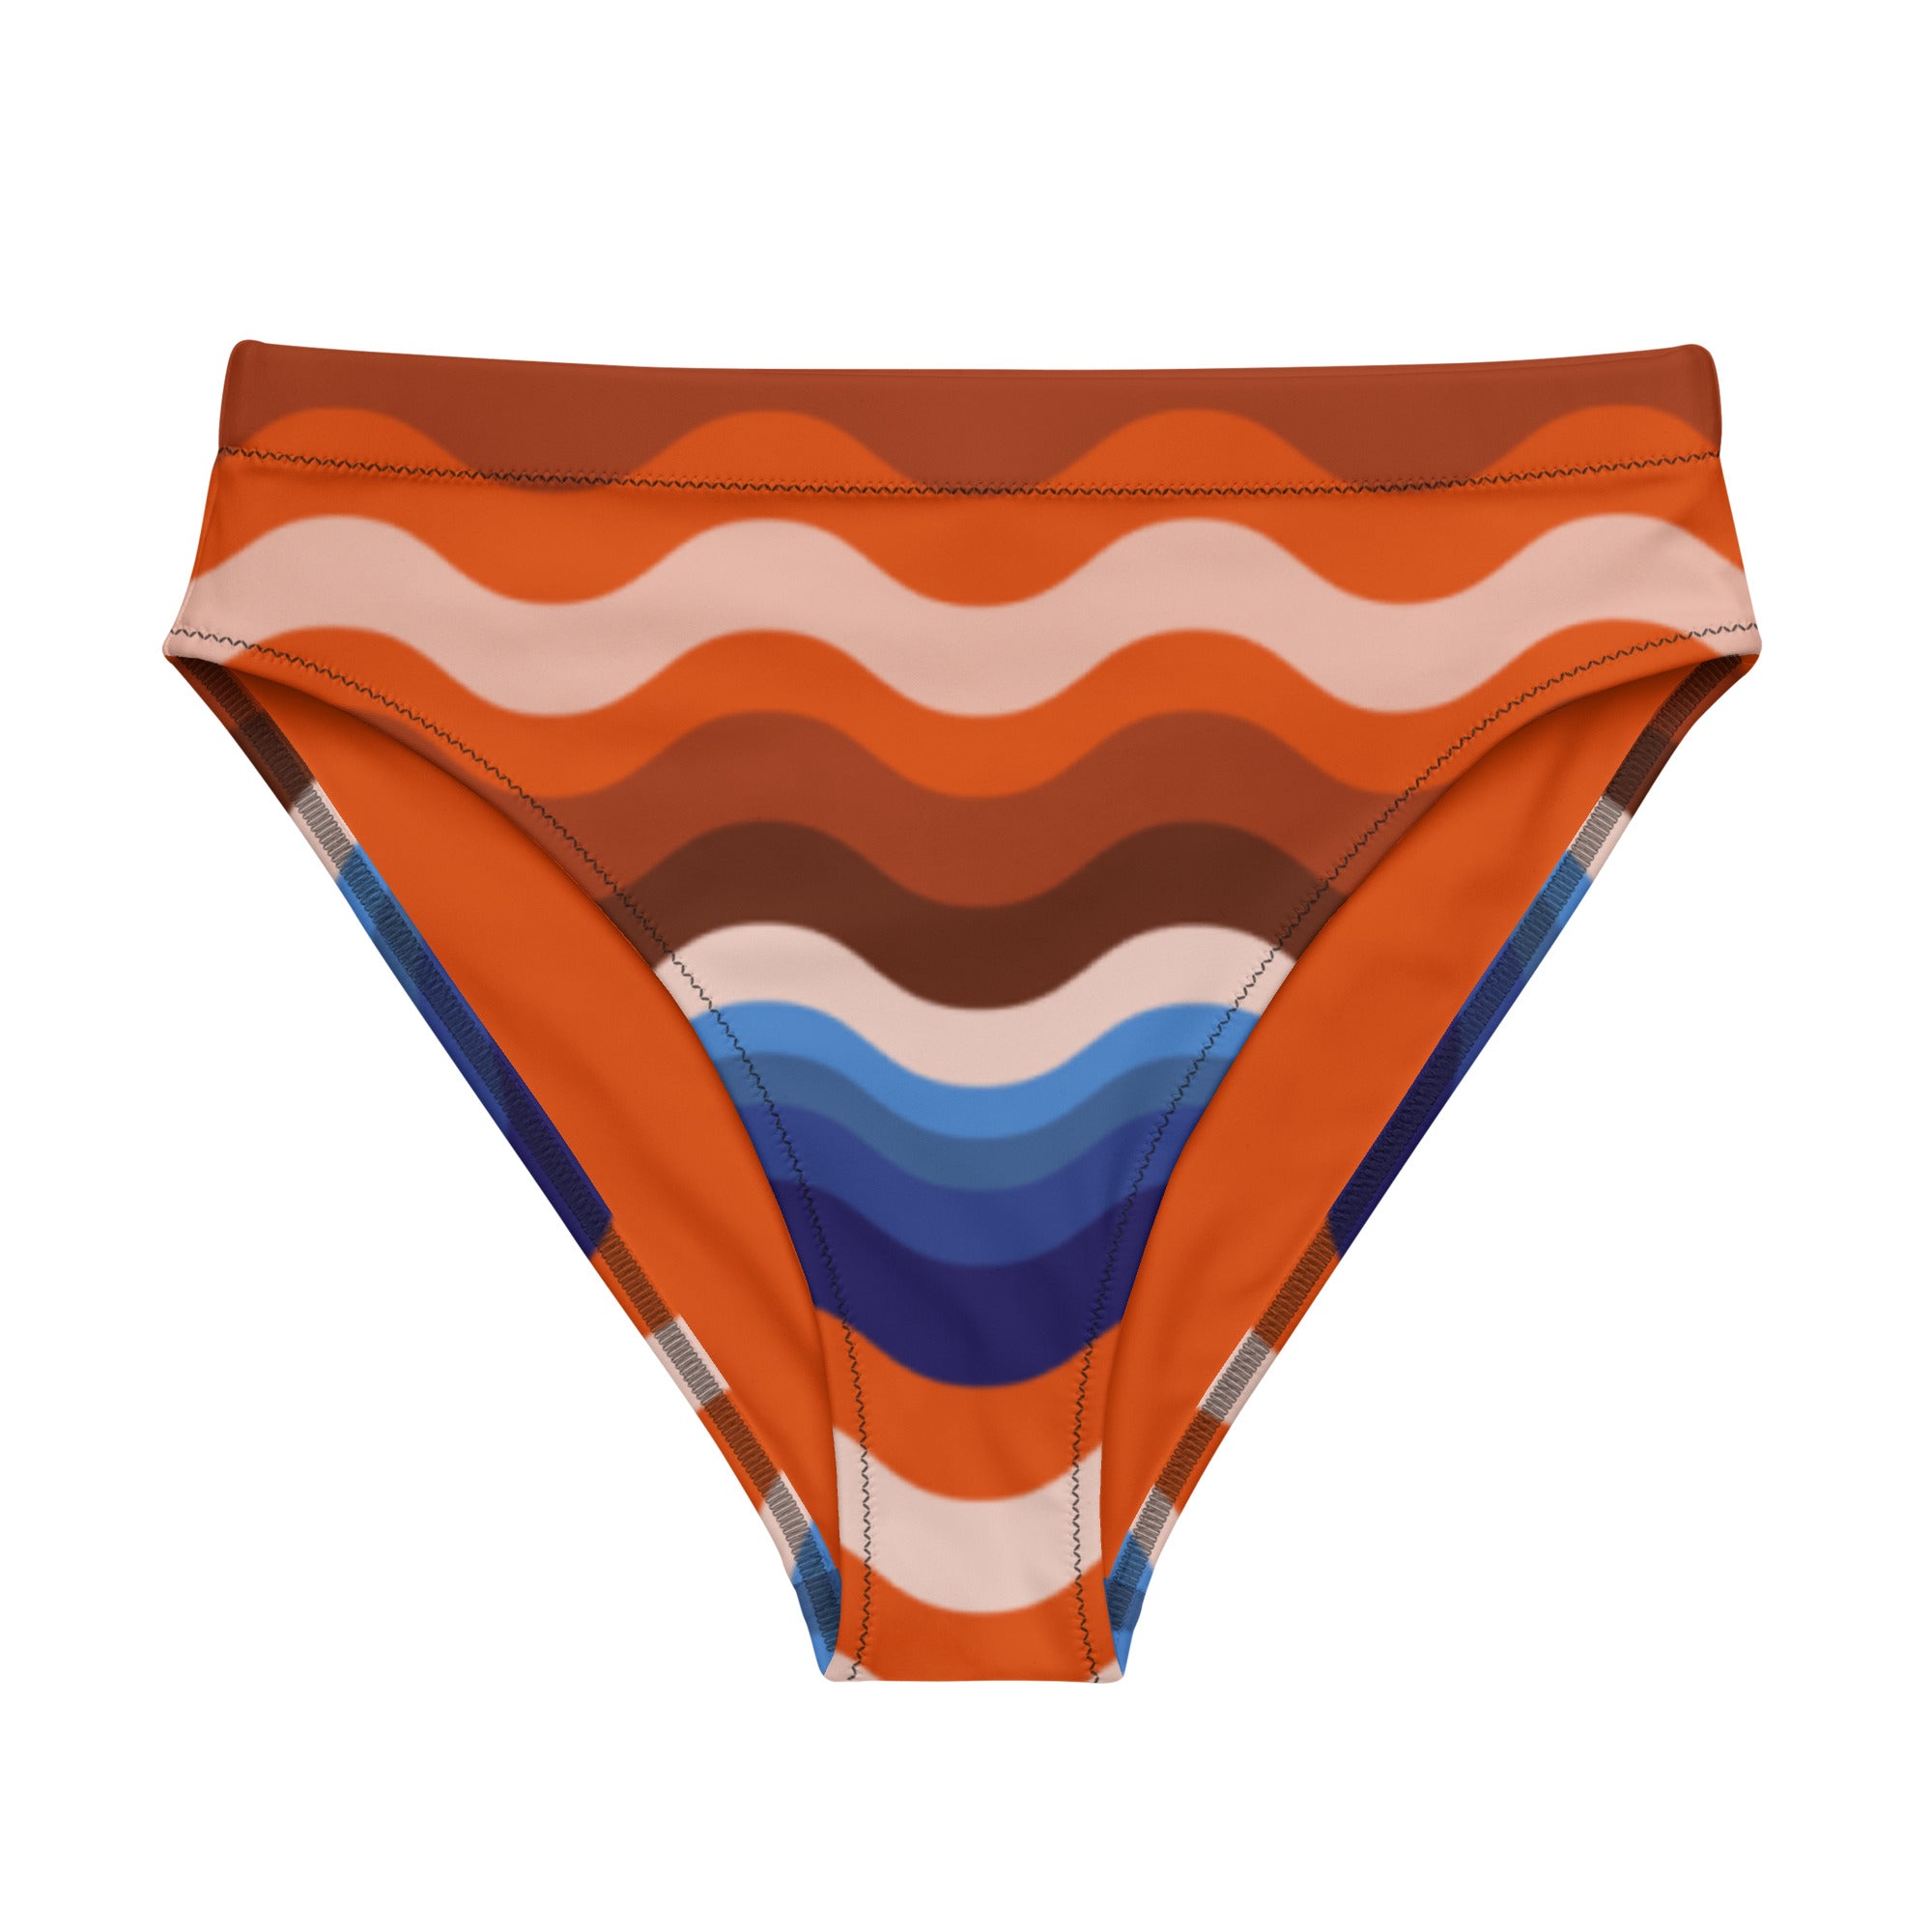 OSAN high-waisted bikini bottom